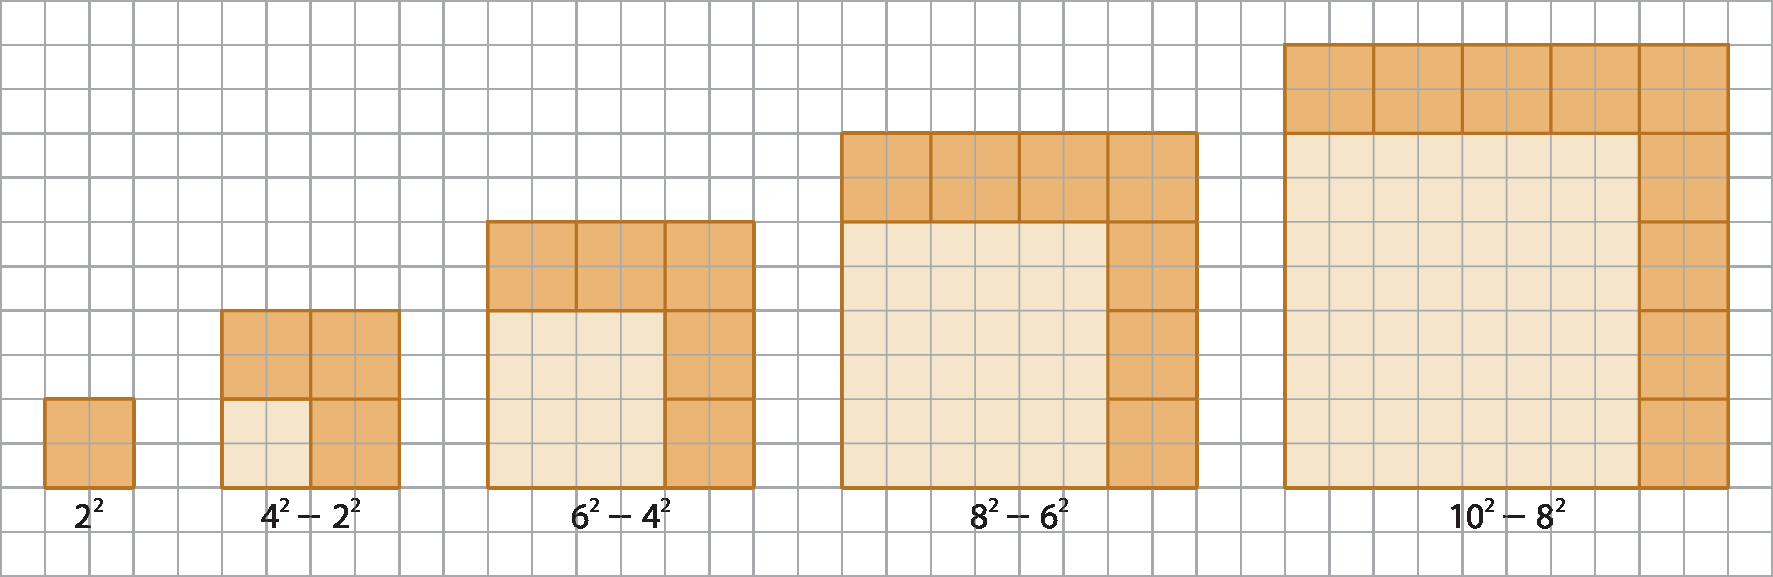 Ilustração. Malha quadriculada com cinco figuras de quadrados de cor laranja escuro contendo outros cinco quadrados de cor laranja claro.   Primeira figura: quadrado de cor laranja escuro, de lados 2 por 2, formado por 4 quadradinhos menores. Abaixo, legenda: 2 elevado a 2.  Segunda figura: quadrado de cor laranja escuro, de lados 4 por 4. Na base inferior esquerda interna ao quadrado, outro quadrado de cor laranja claro, de lados 2 por 2. Abaixo, legenda: 4 elevado a 2, menos 2 elevado a 2.  Terceira figura: quadrado de cor laranja escuro, de lados 6 por 6. Na base inferior esquerda interna ao quadrado, outro quadrado de cor laranja claro, de lados 4 por 4. Abaixo, legenda: 6 elevado a 2, menos 4 elevado a 2.  Quarta figura: quadrado de cor laranja escuro, de lados 8 por 8. Na base inferior esquerda interna ao quadrado, outro quadrado de cor laranja claro, de lados 6 por 6. Abaixo, legenda: 8 elevado a 2, menos 6 elevado a 2.  Quinta figura: quadrado de cor laranja escuro, de lados 10 por 10. Na base inferior esquerda interna ao quadrado, outro quadrado de cor laranja claro, de lados 8 por 8. Abaixo, legenda: 10 elevado a 2, menos 8 elevado a 2.